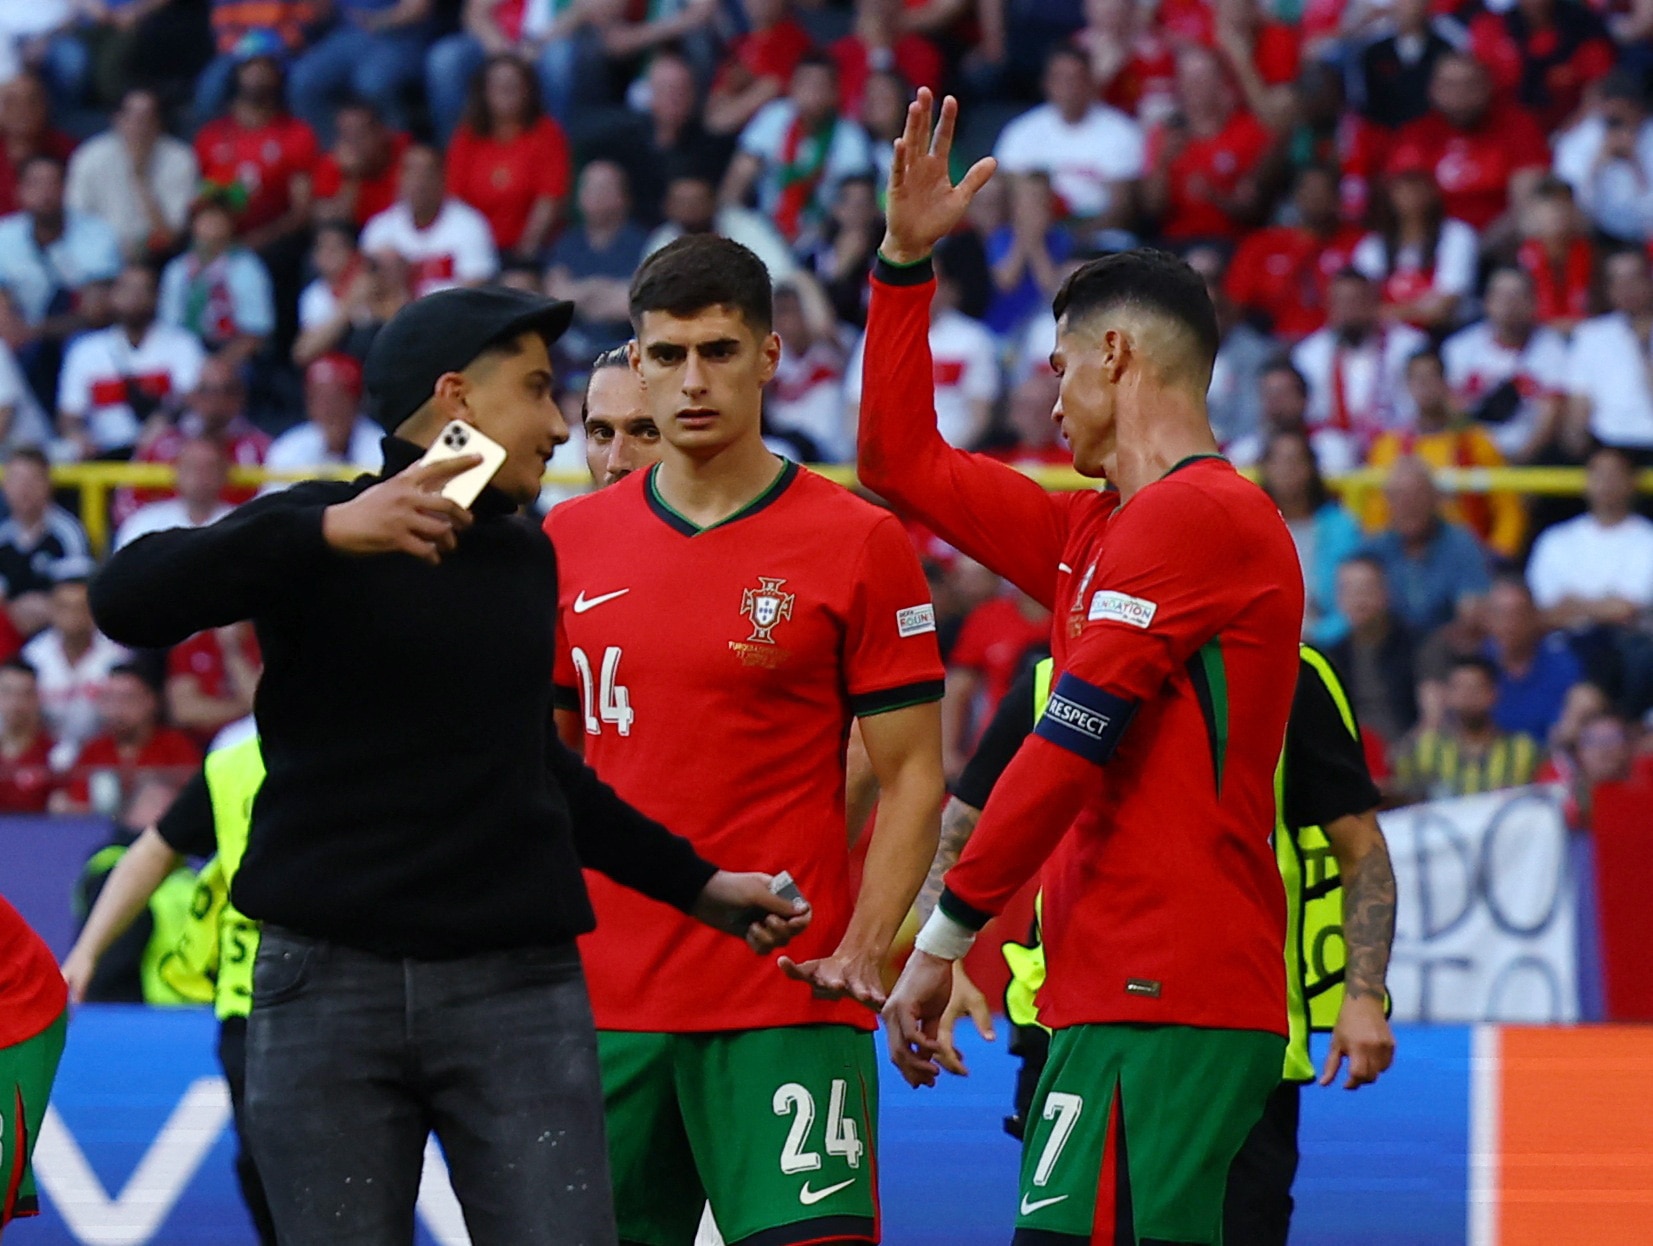 Ronaldo tỏ ra mệt mỏi khi liên tục bị CĐV xin selfie khiến trận đấu bị gián đoạn - Ảnh: REUTERS